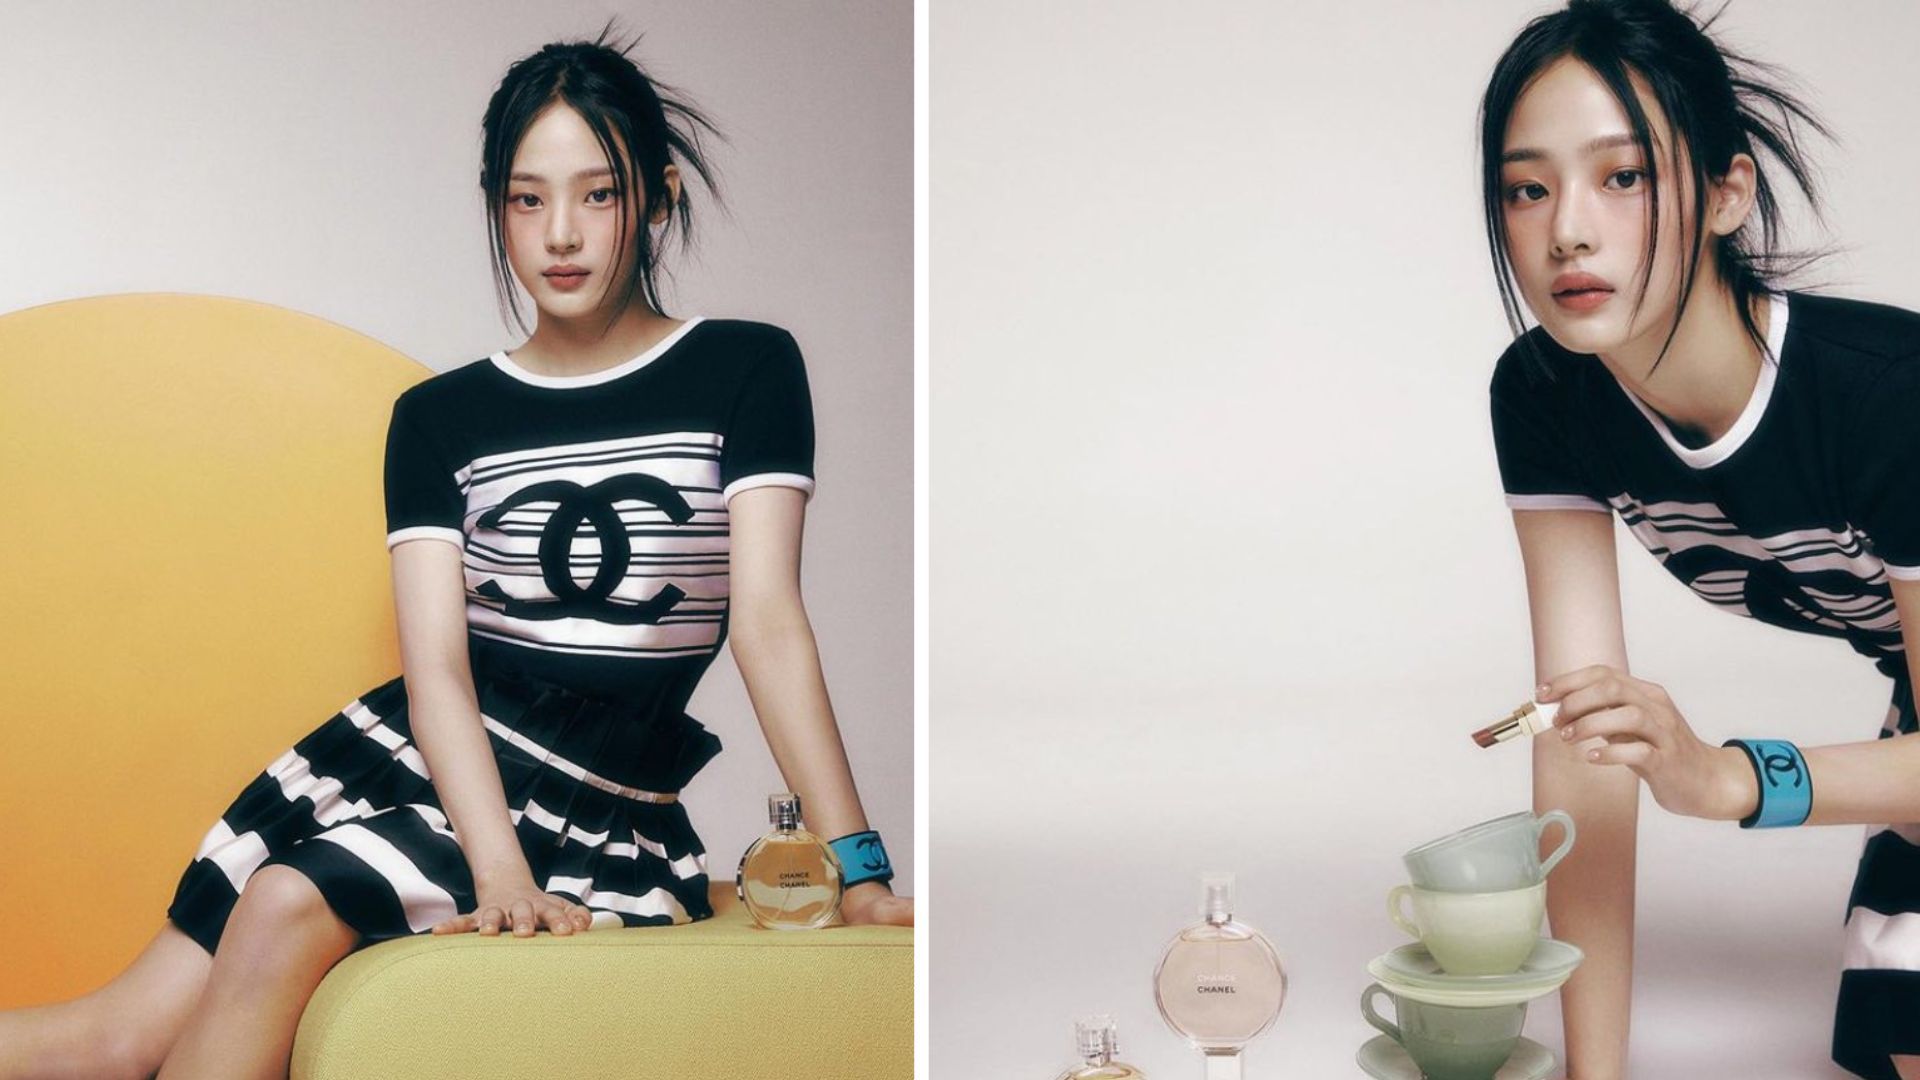 Louis Vuitton Signs K-pop Girl Band Le Sserafim as Brand Ambassadors – WWD